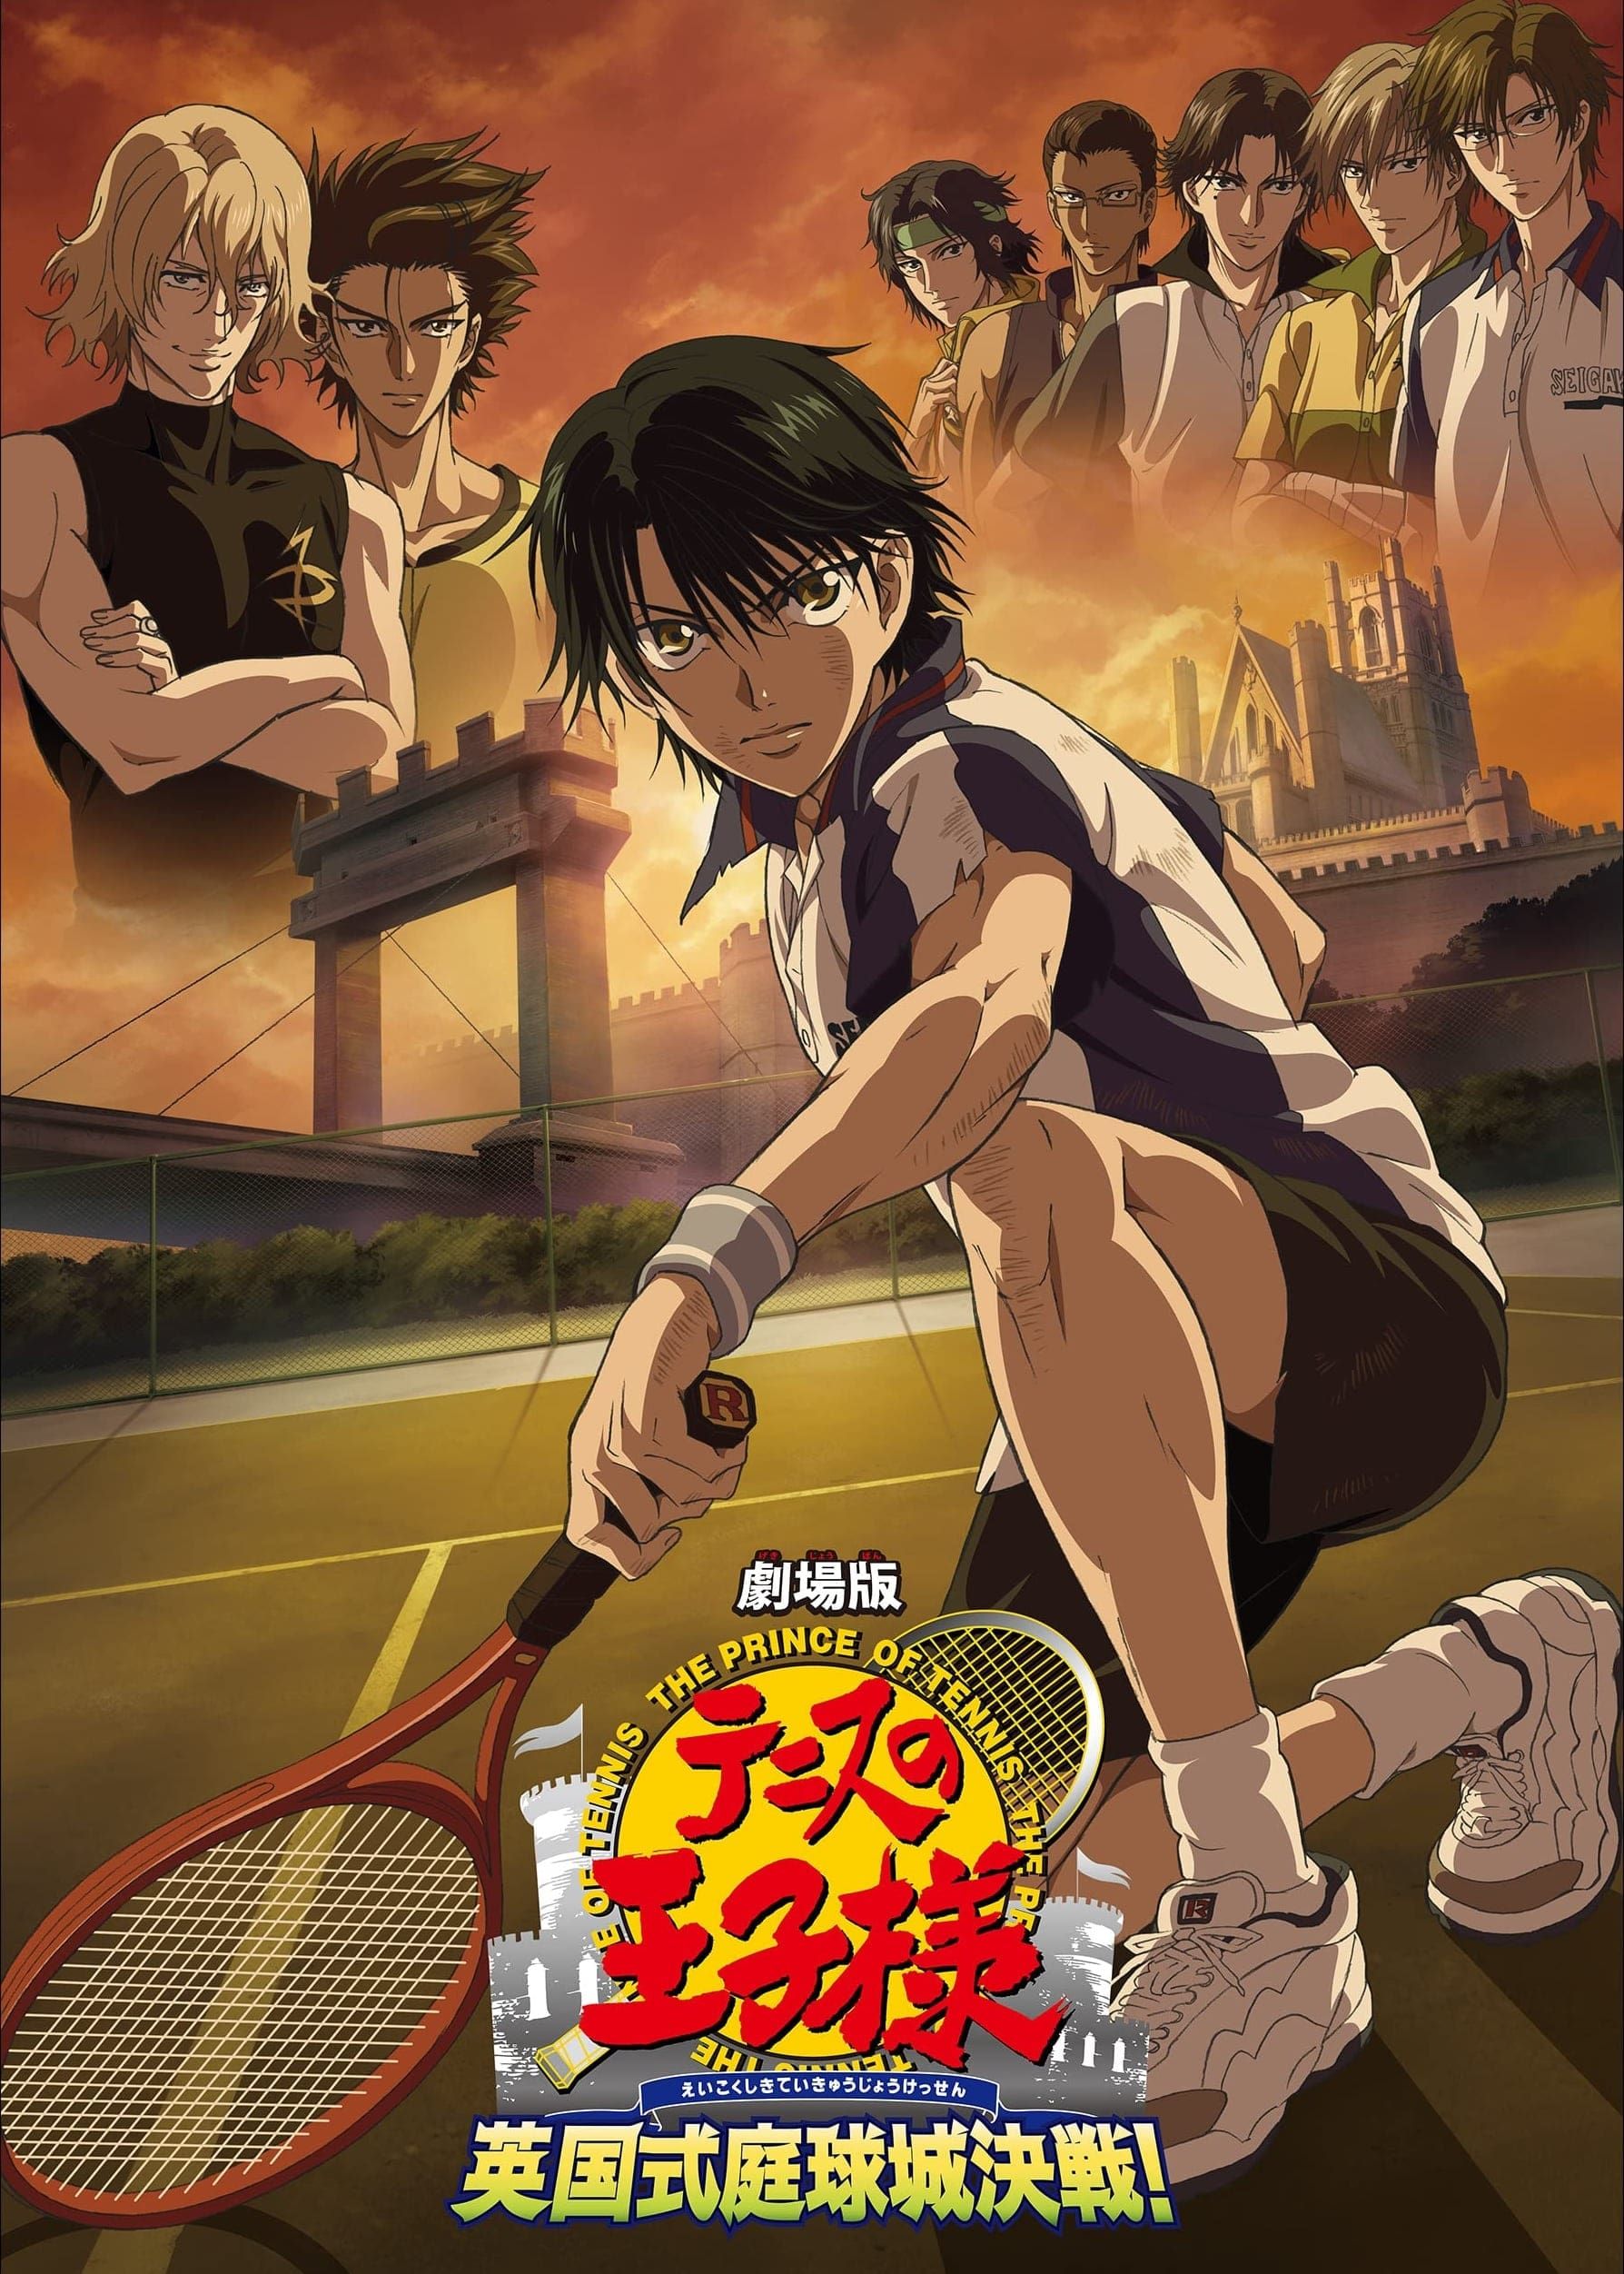 Kuroko no Basket Movie 2: Winter Cup Soushuuhen - Namida no Saki e